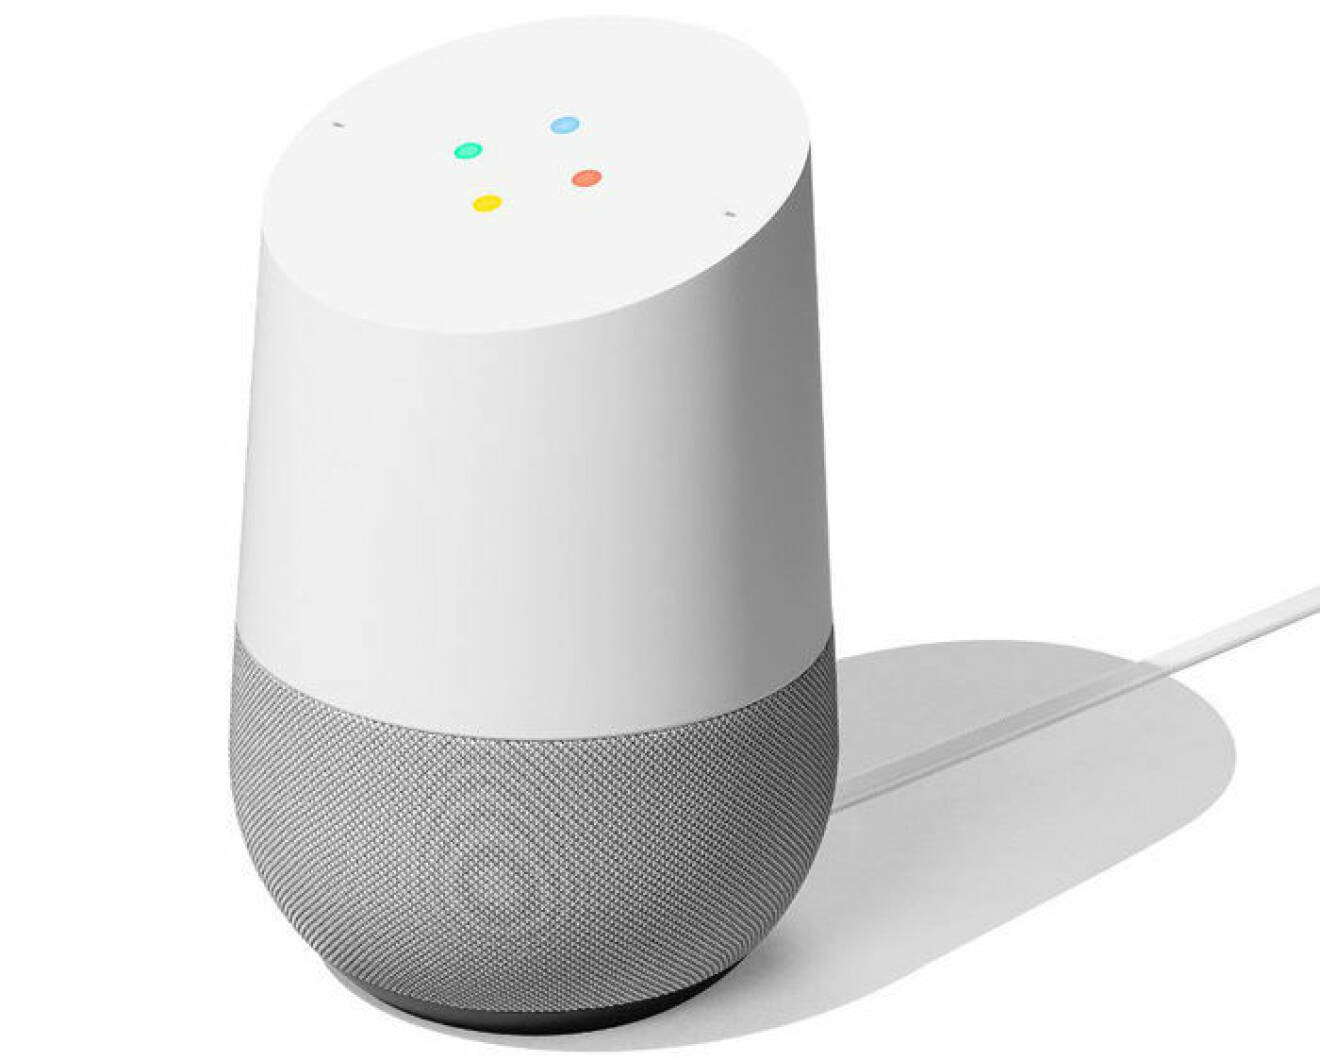 En bild på den smarta högtalaren Google Home, som lanseras den 24 oktober i Sverige.